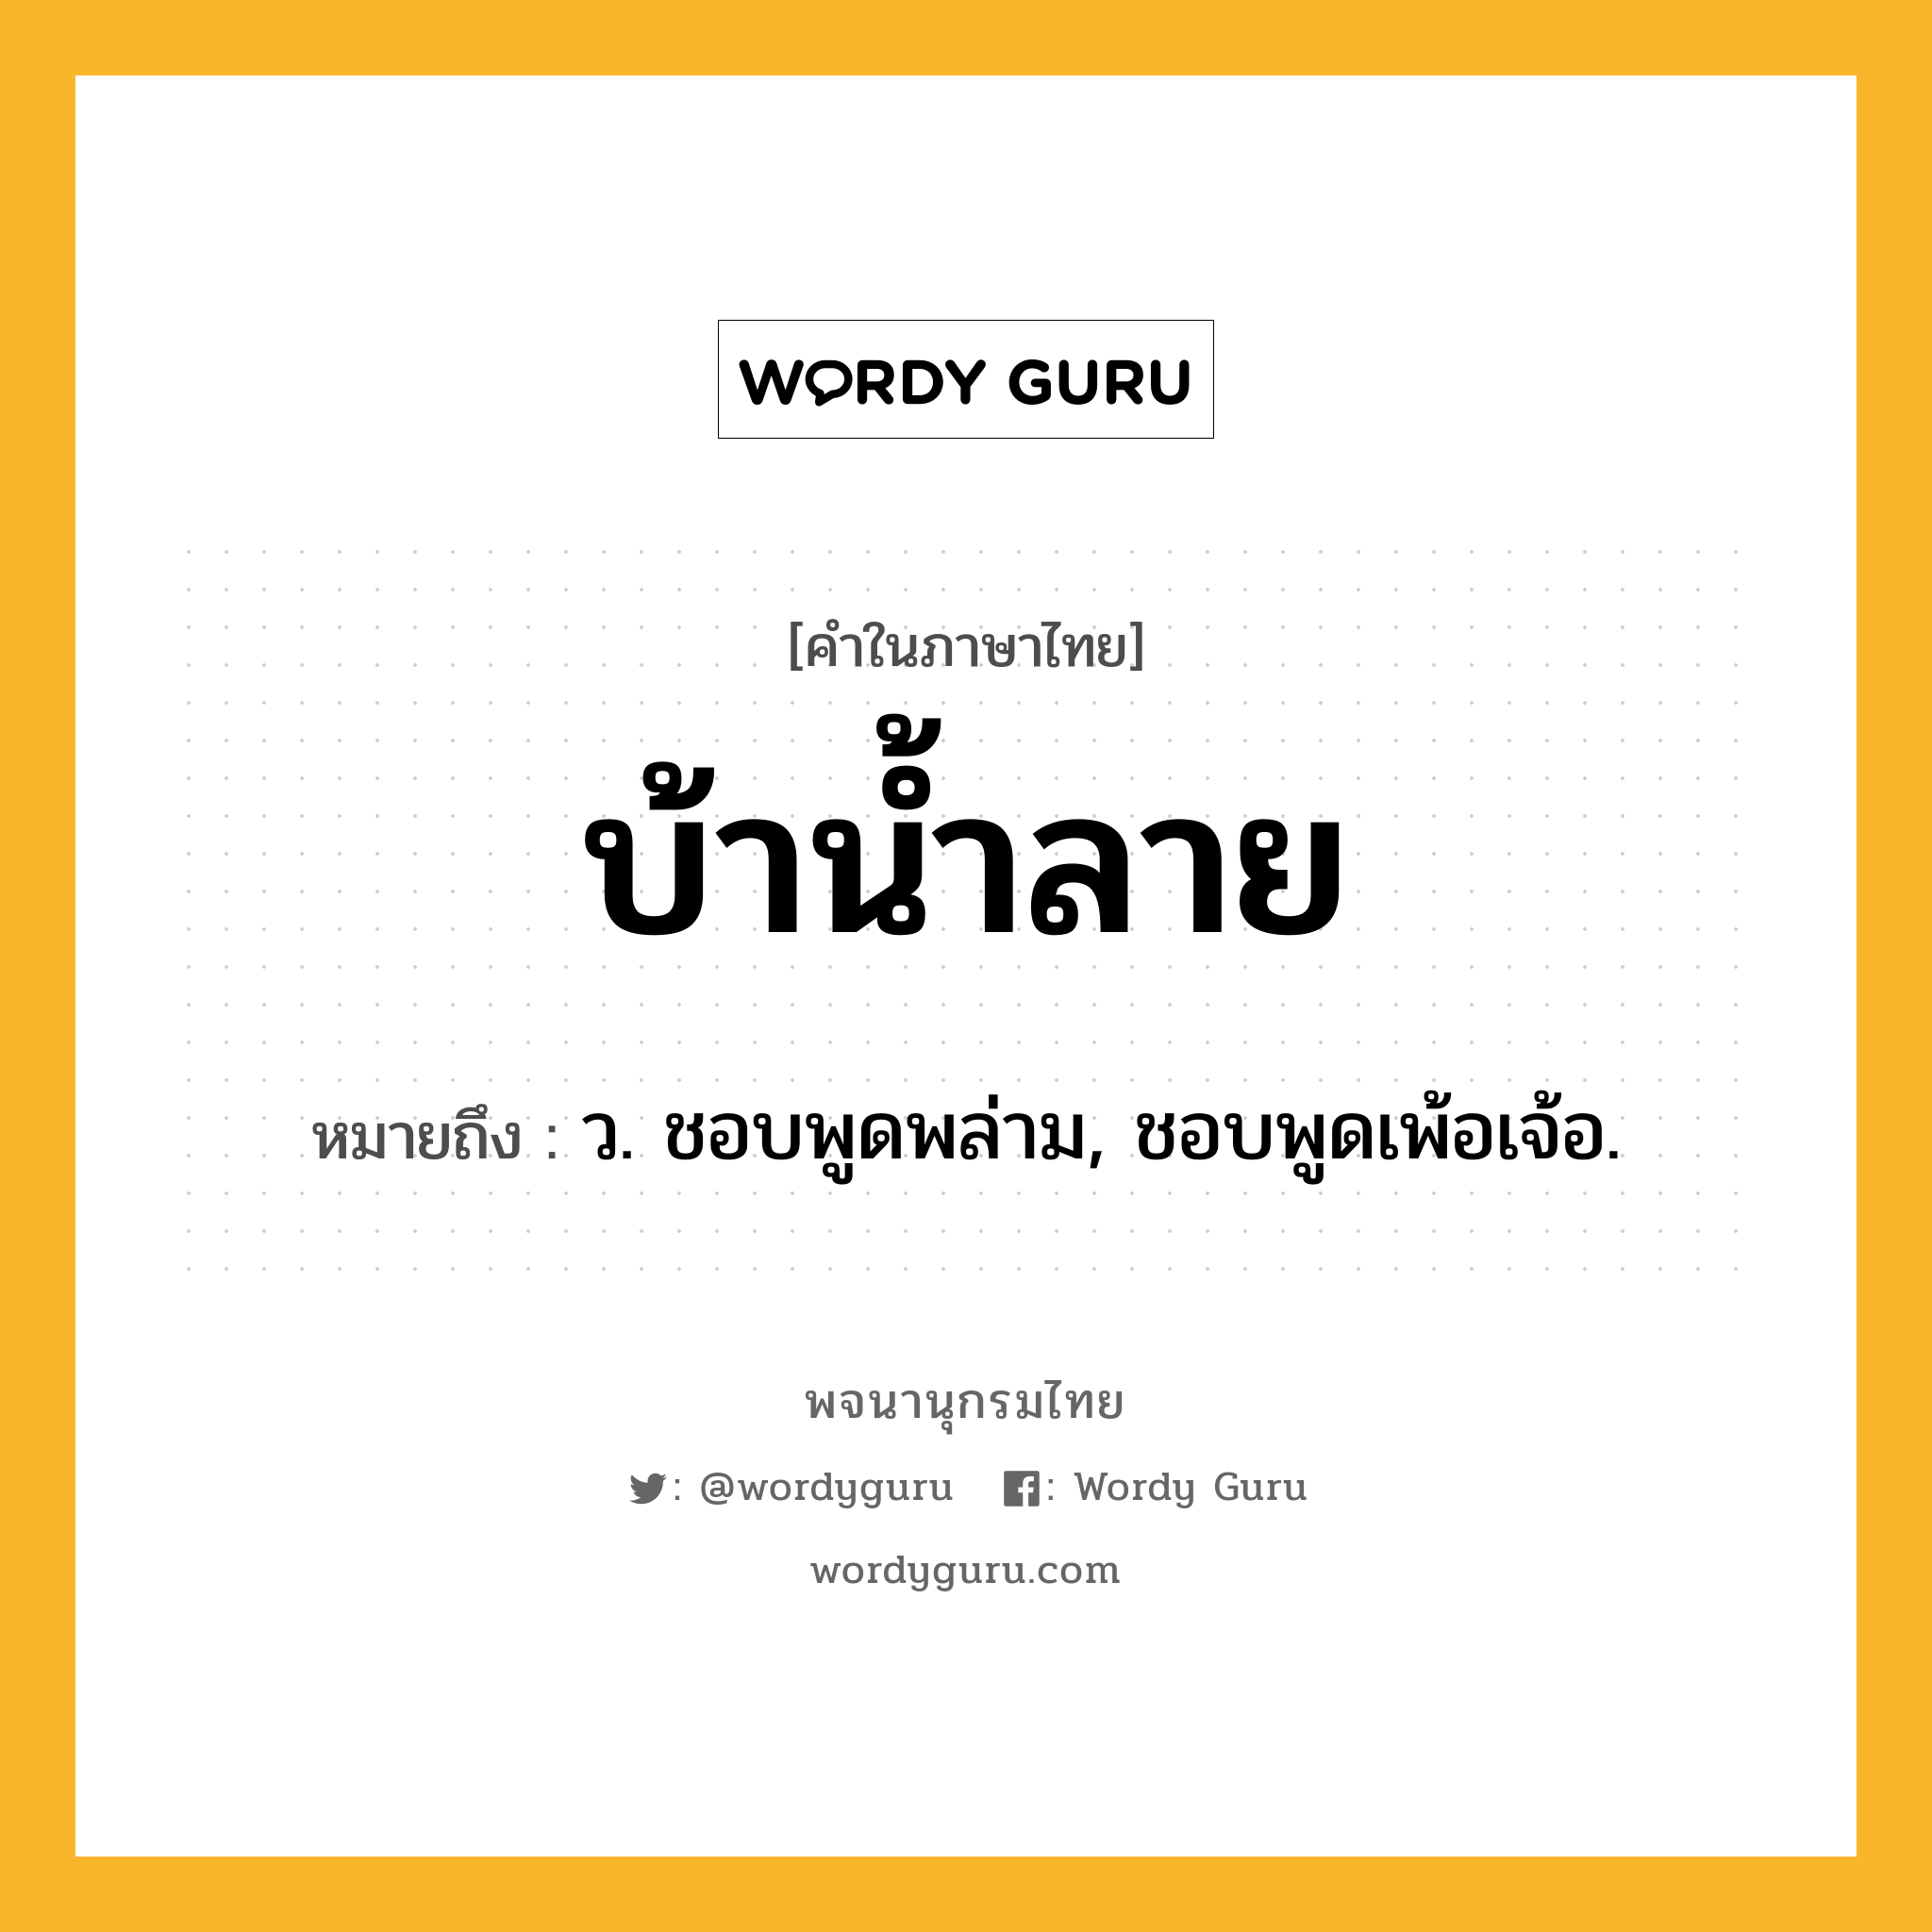 บ้าน้ำลาย ความหมาย หมายถึงอะไร?, คำในภาษาไทย บ้าน้ำลาย หมายถึง ว. ชอบพูดพล่าม, ชอบพูดเพ้อเจ้อ.